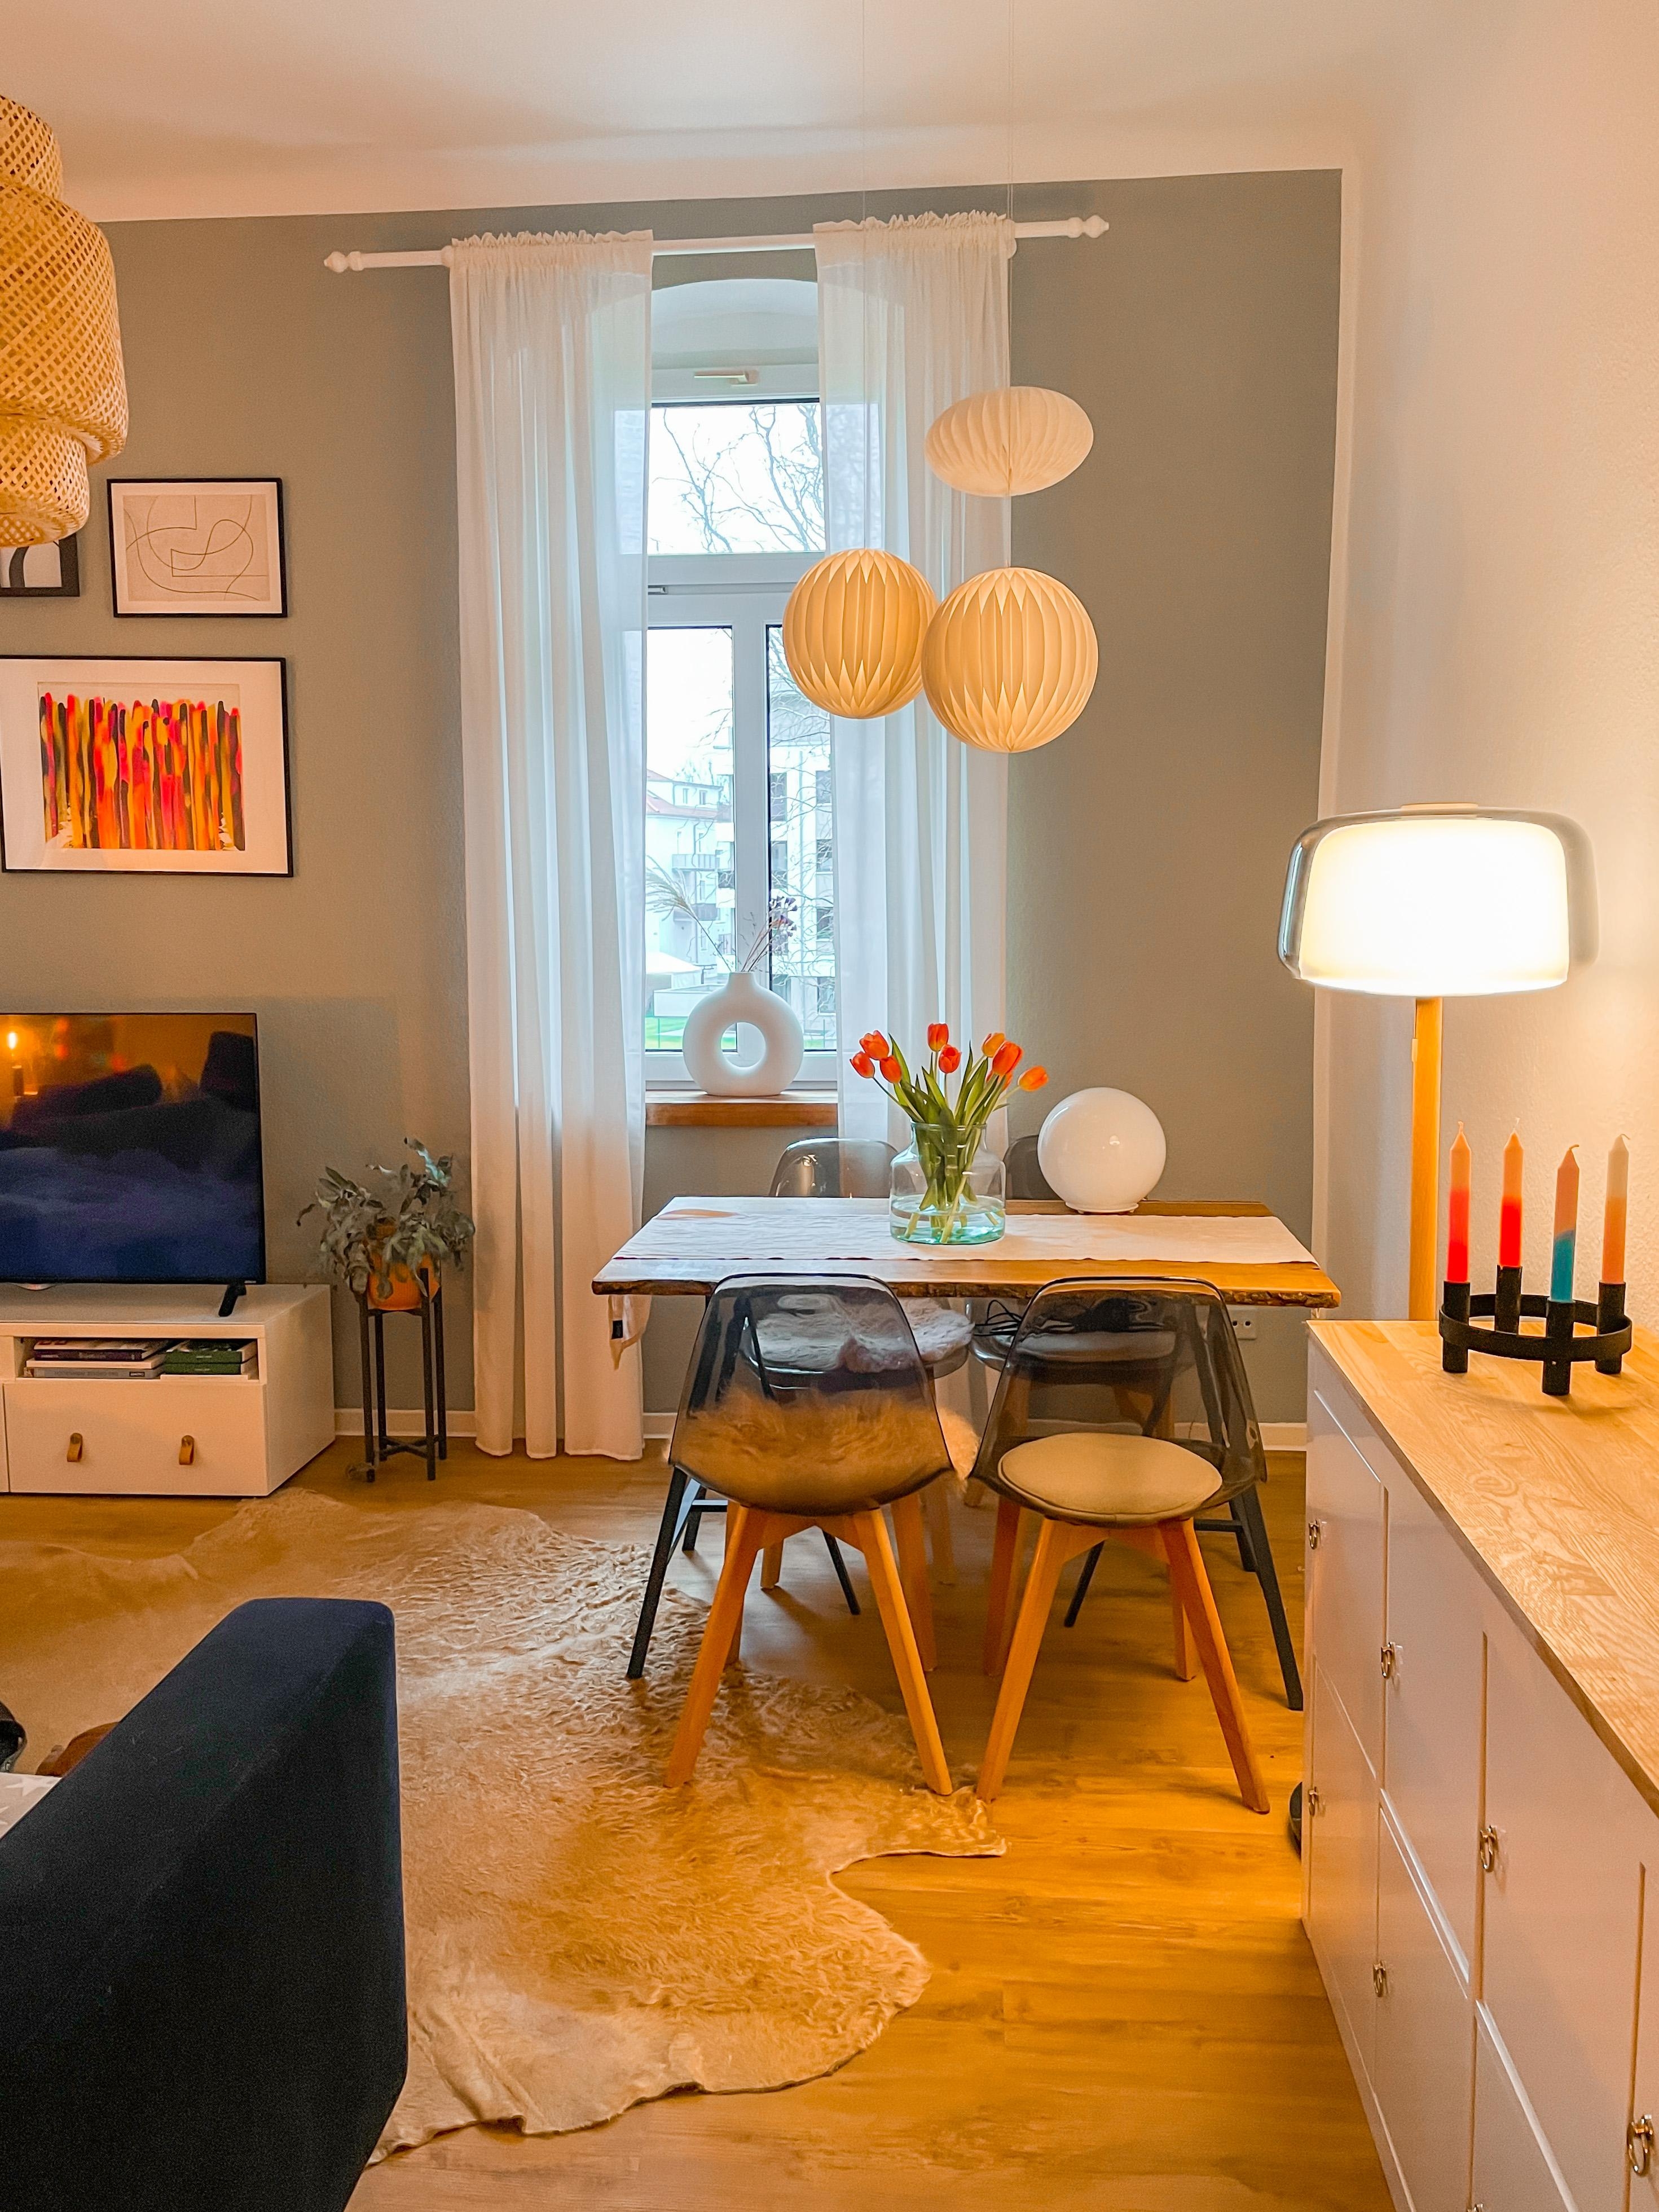 #livingroom #lampen #beleuchtung #cozy #kerzen #schönerwohnenfarbe #jadegrün #kunst #bunt 